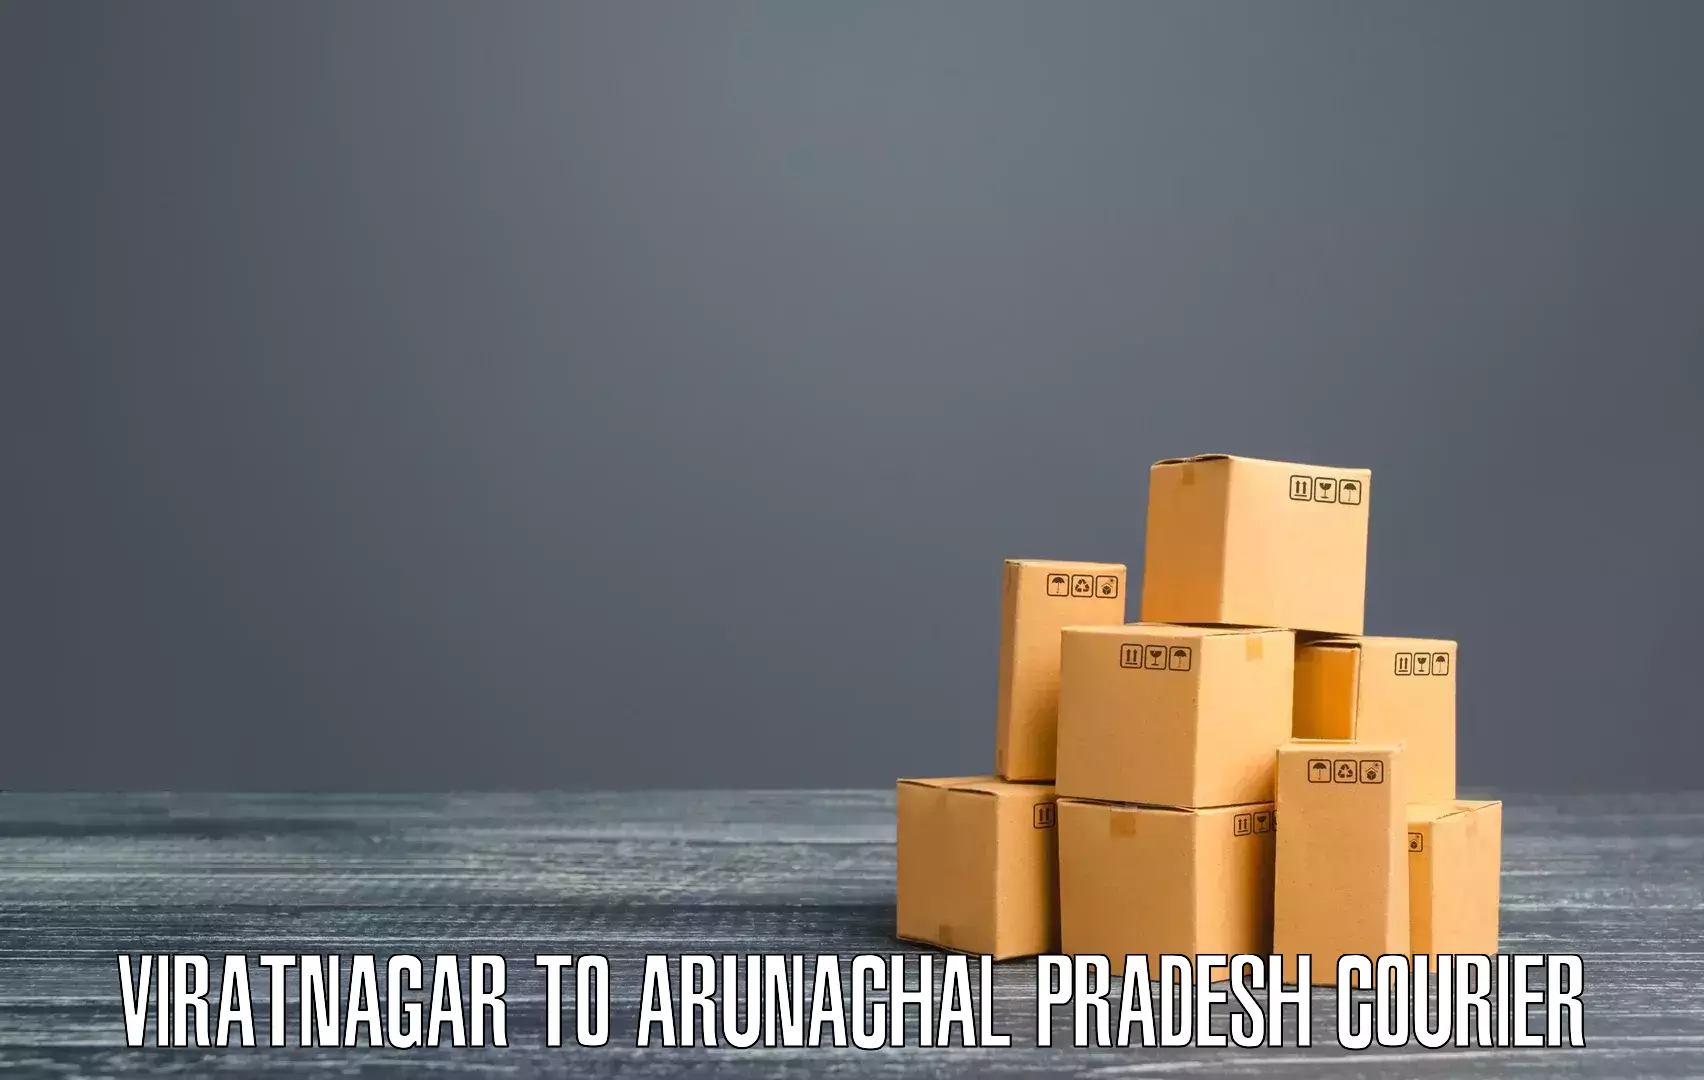 International shipping rates Viratnagar to Arunachal Pradesh